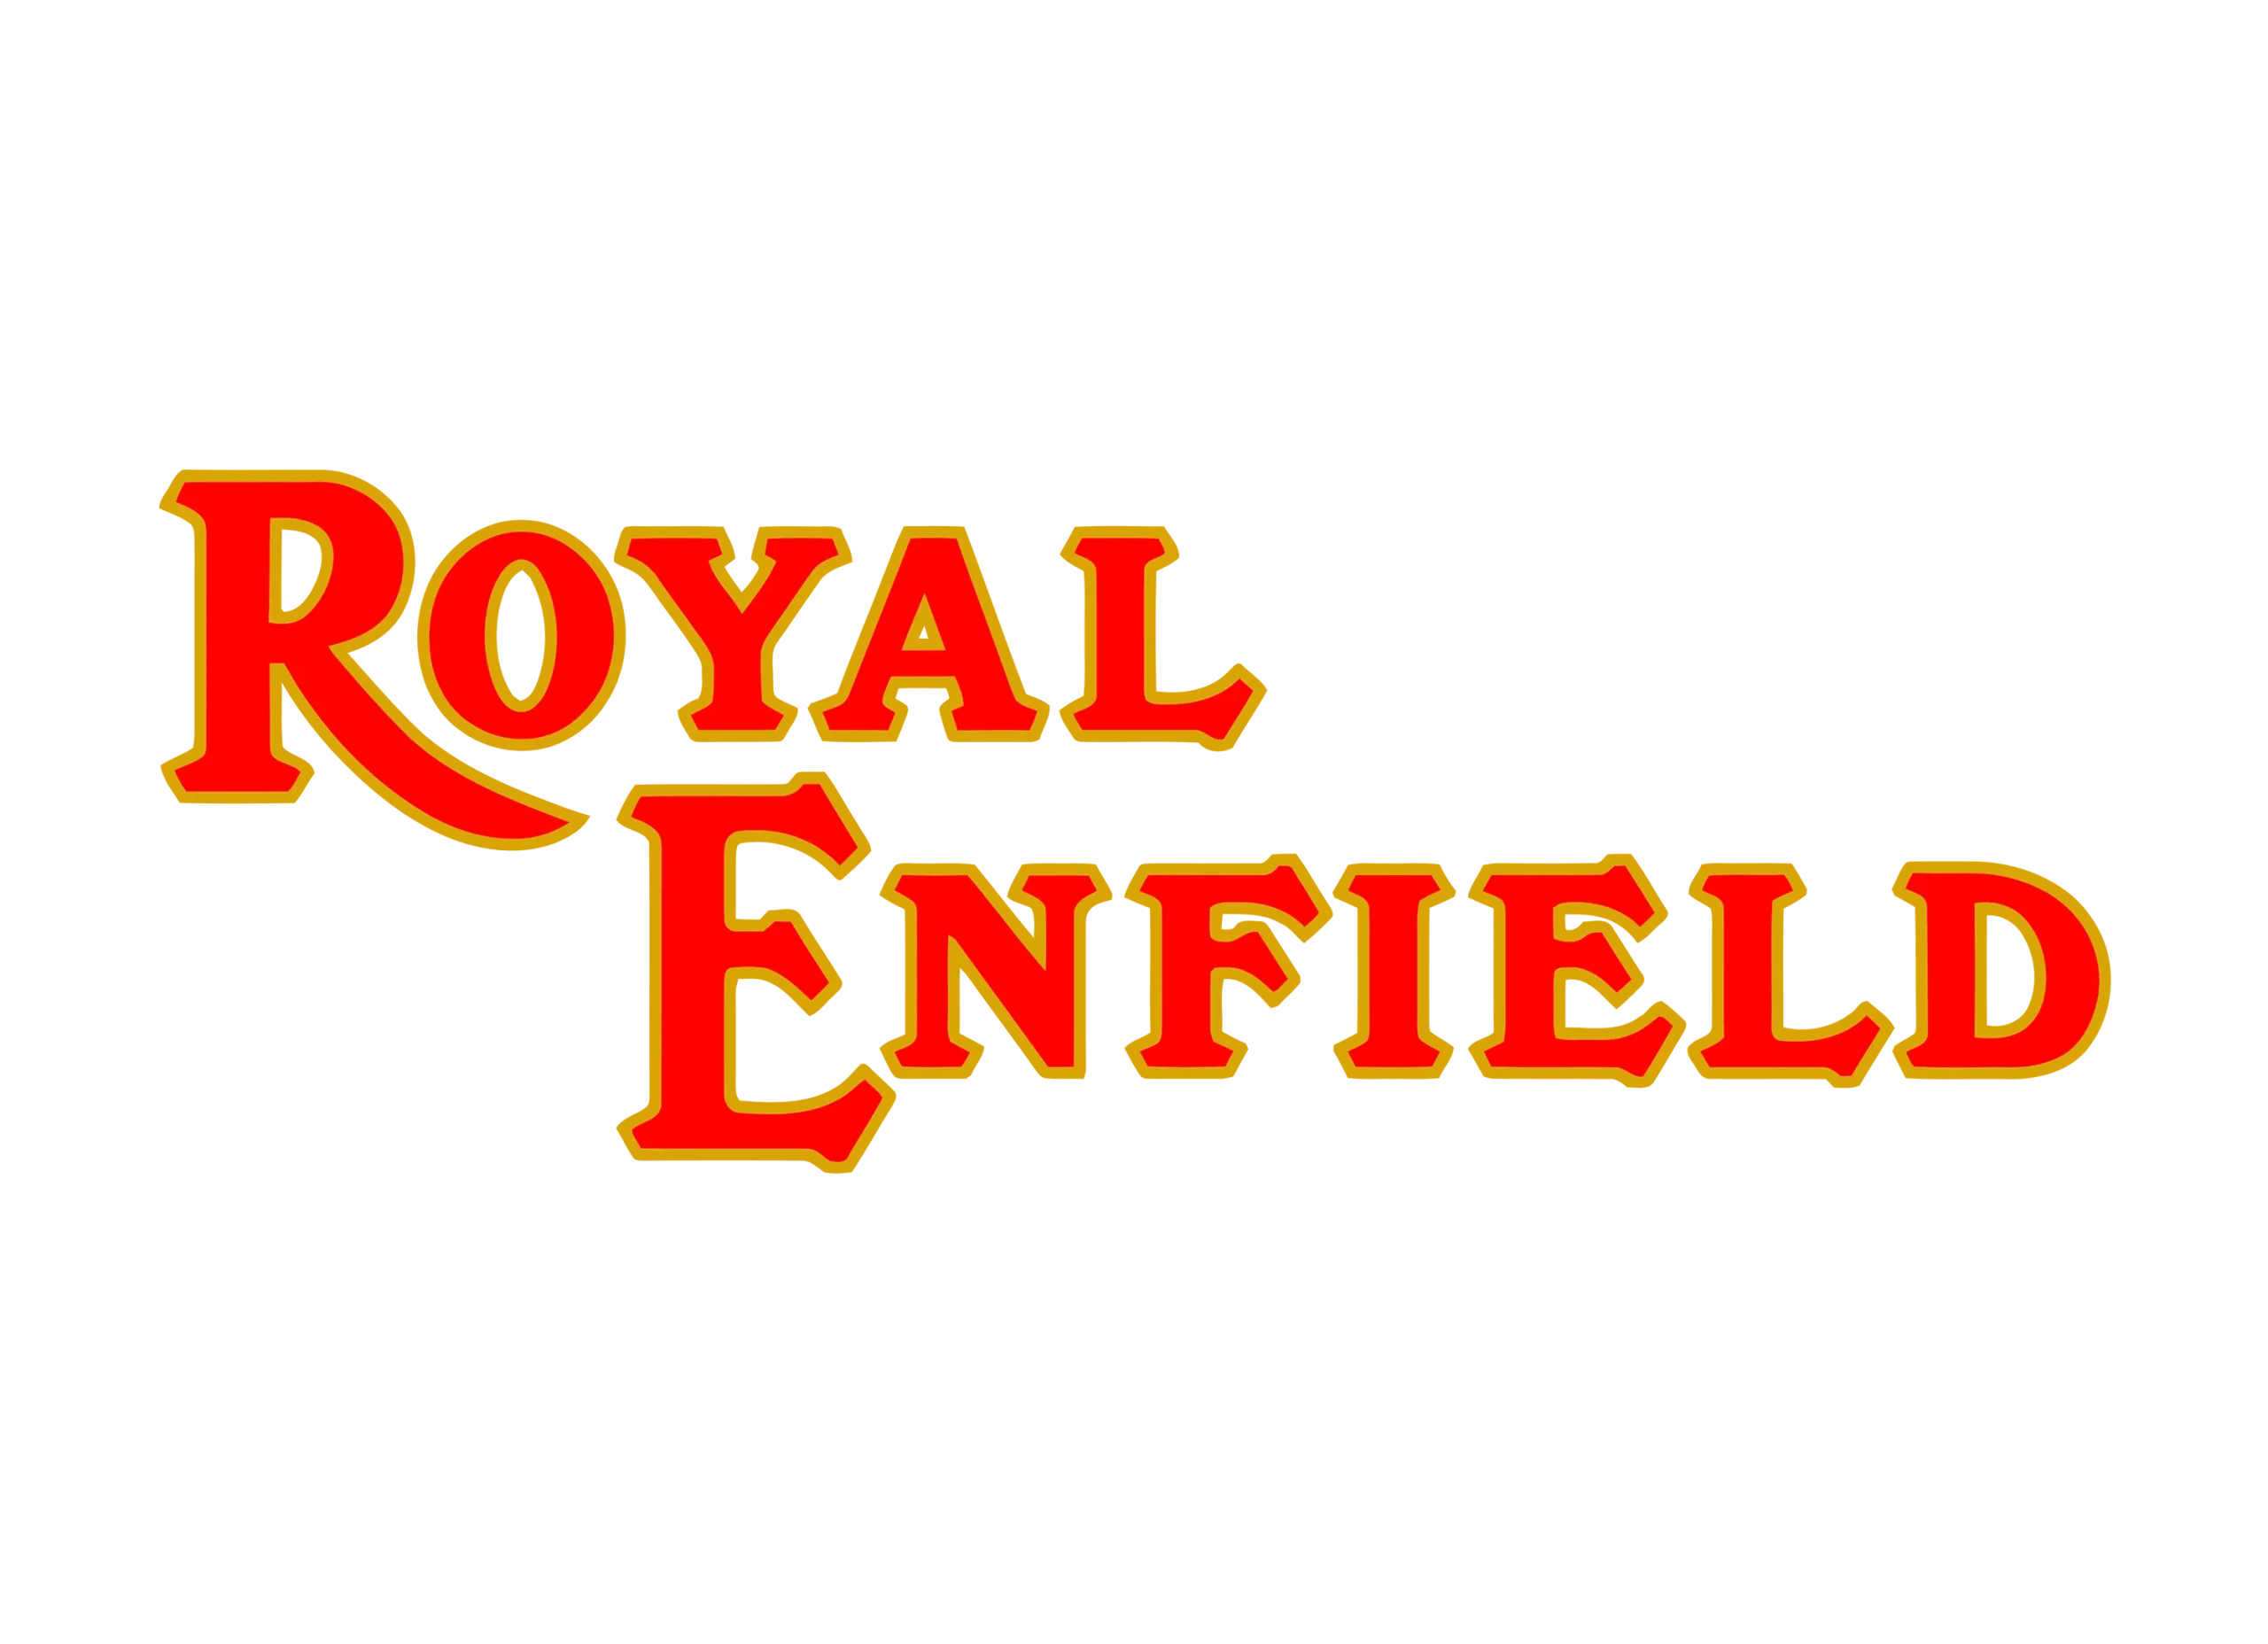 Royal Enfield logo 1995-2014